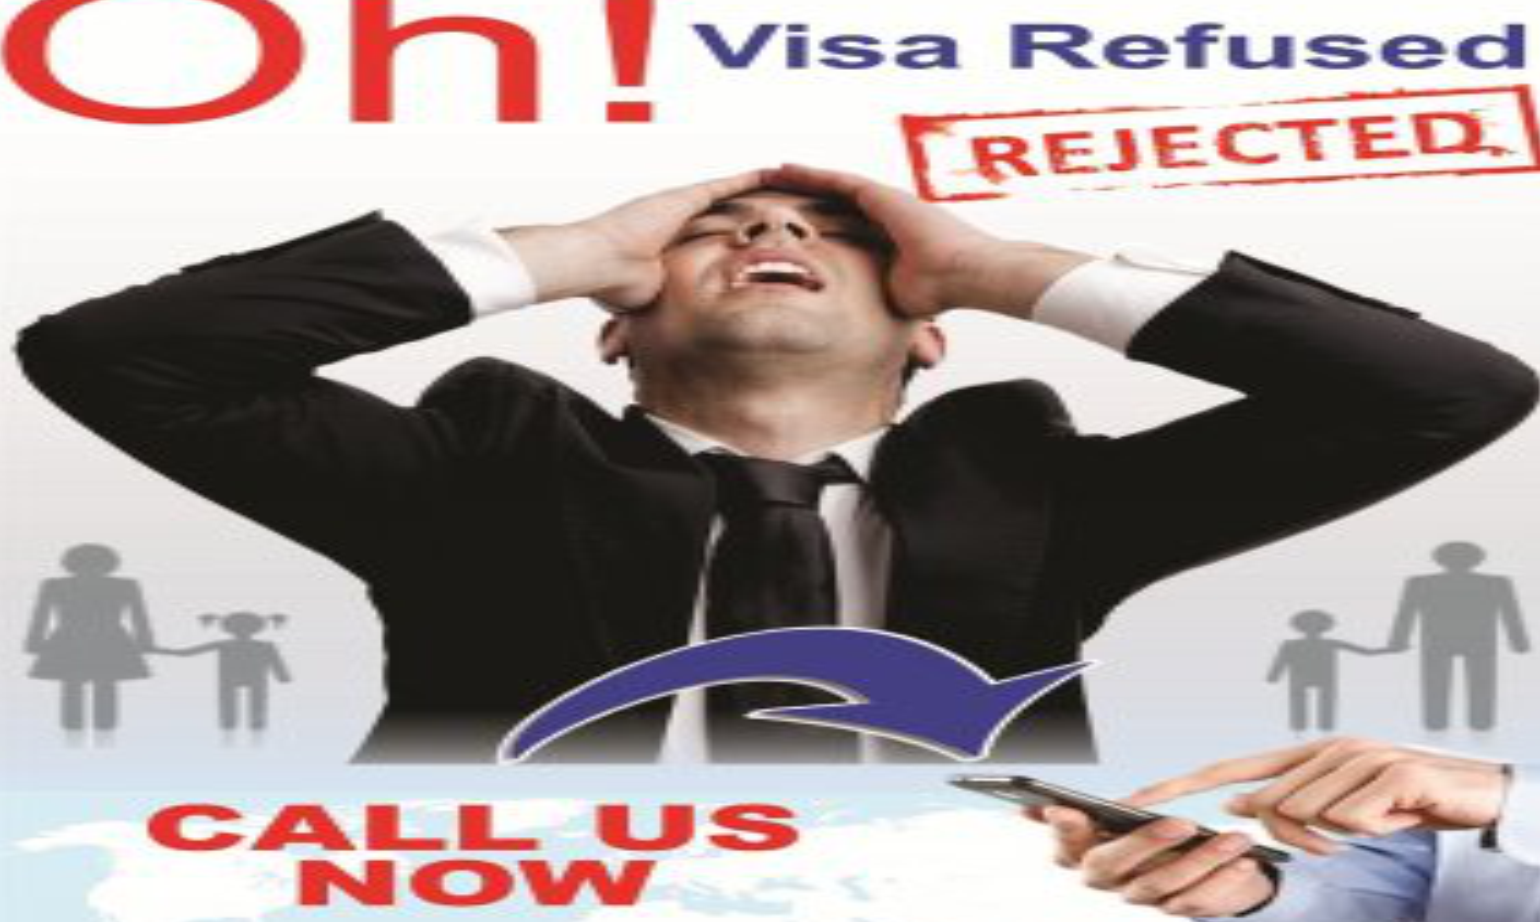 Canada Visa Refusal